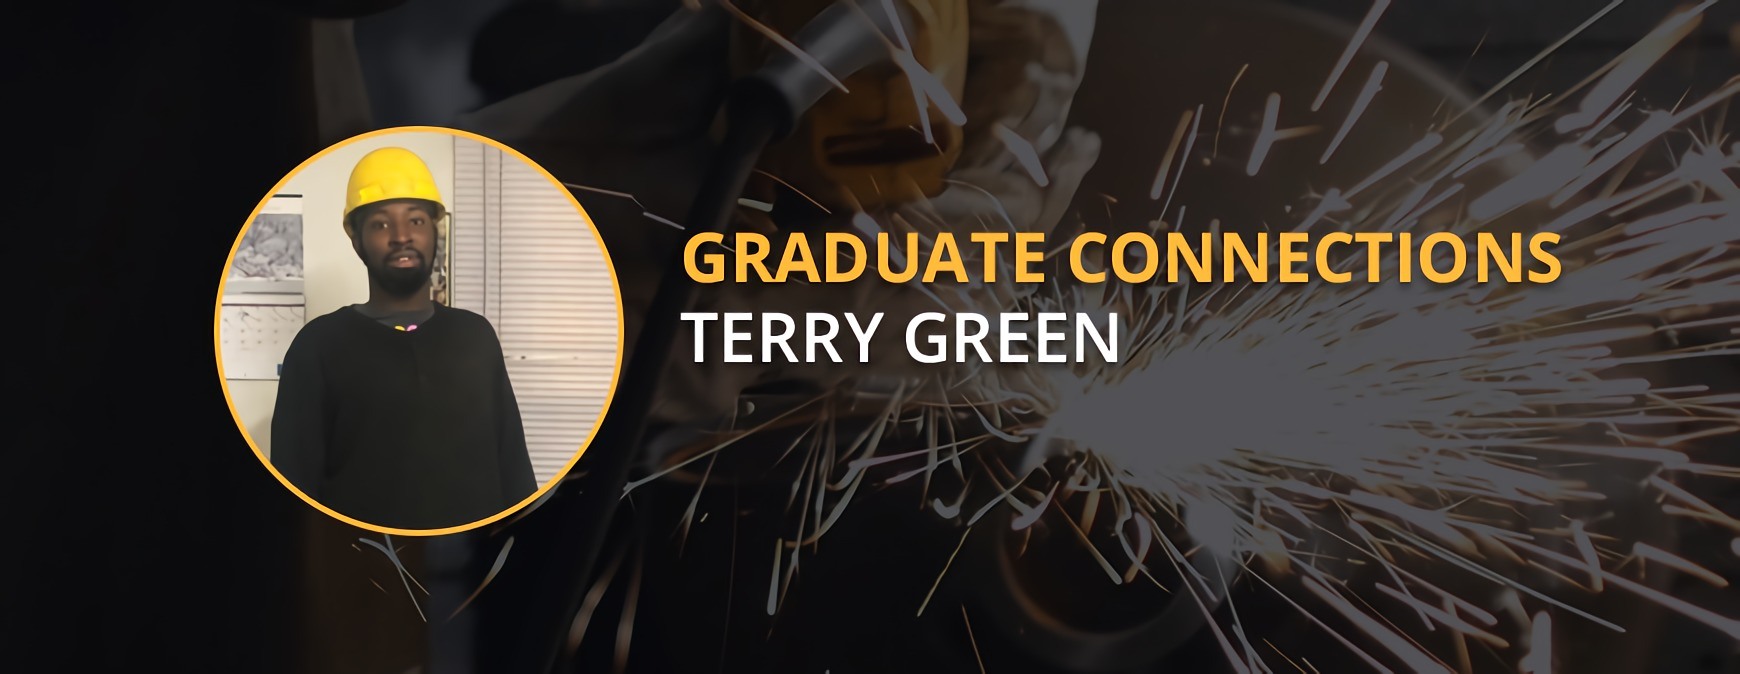 Conexiones de graduados de Terry Green